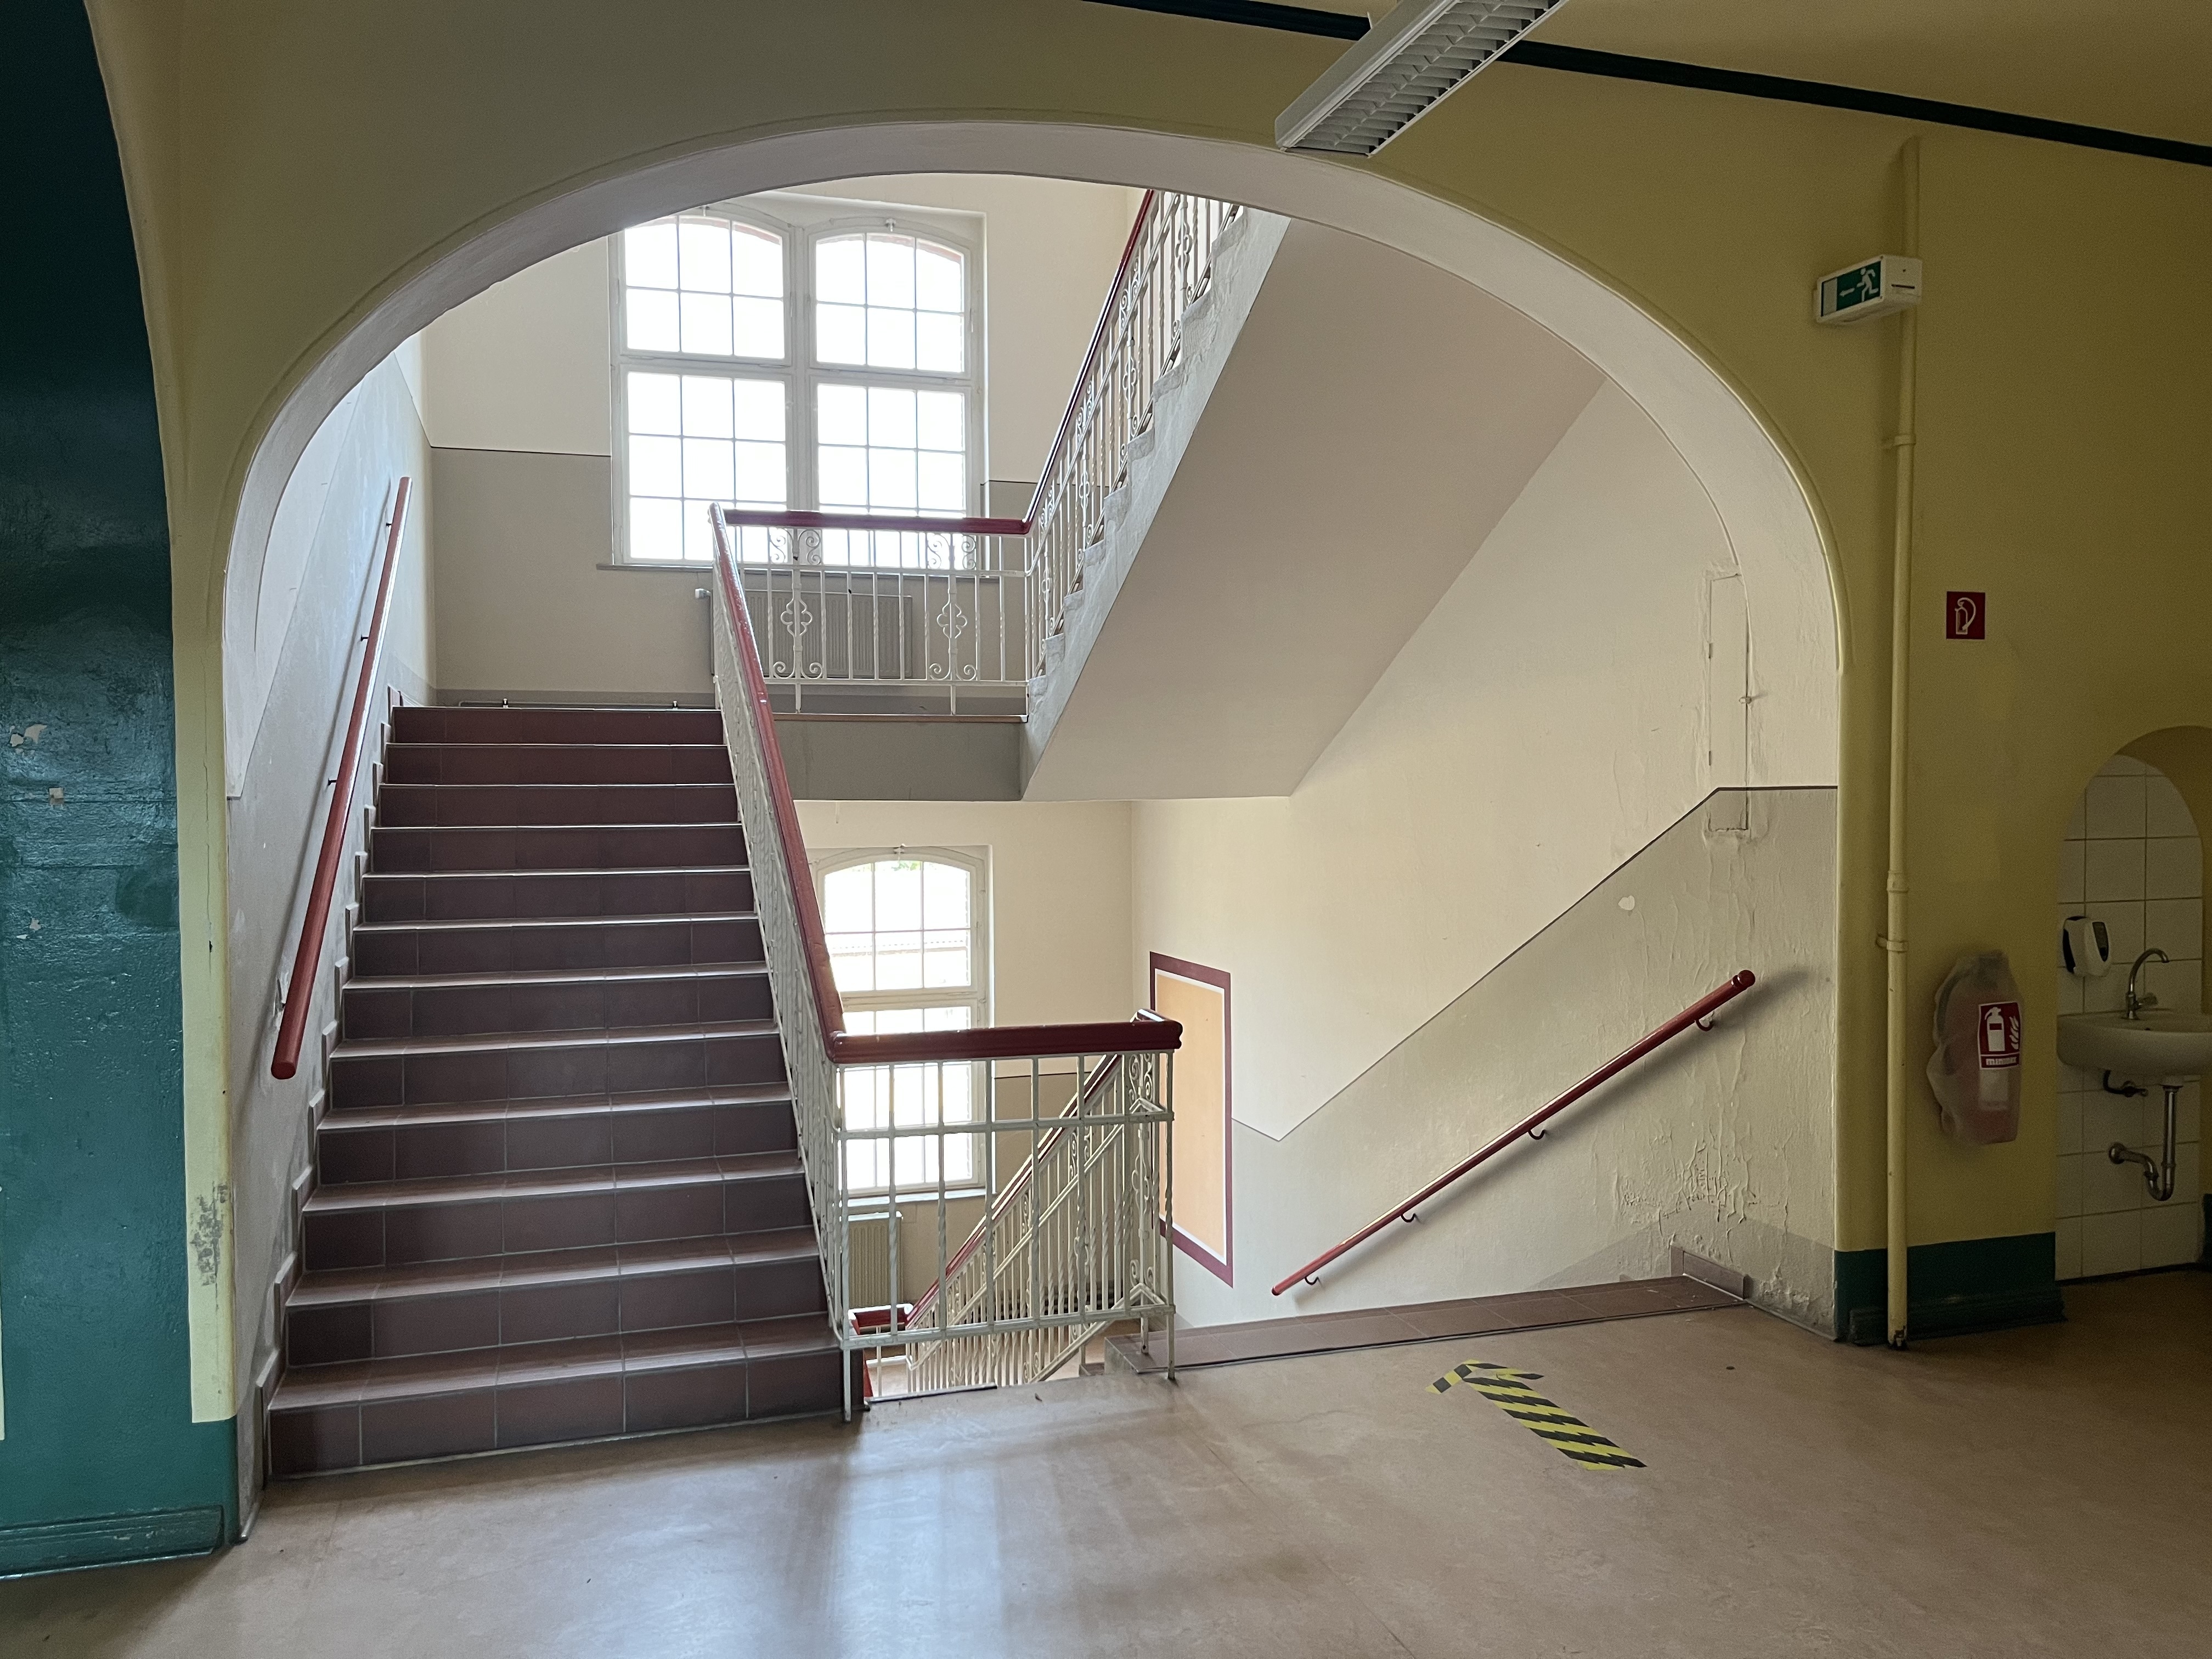 Dank der großen Fenster im denkmalgeschützten Treppenhaus gelangt viel Licht in das ehemaligen Schulgebäude. - Photo: © Großraumbüro